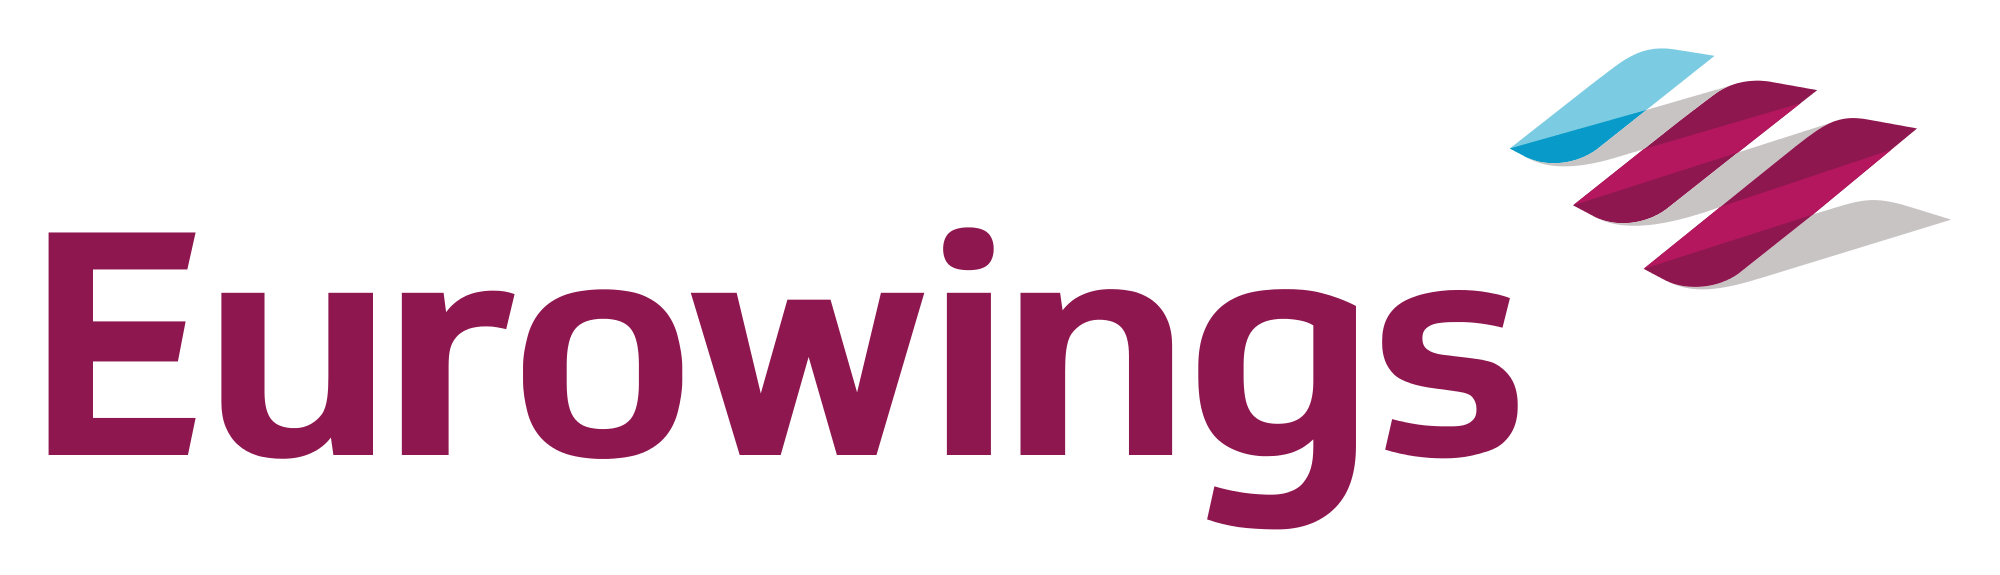 Eurowings-Logo